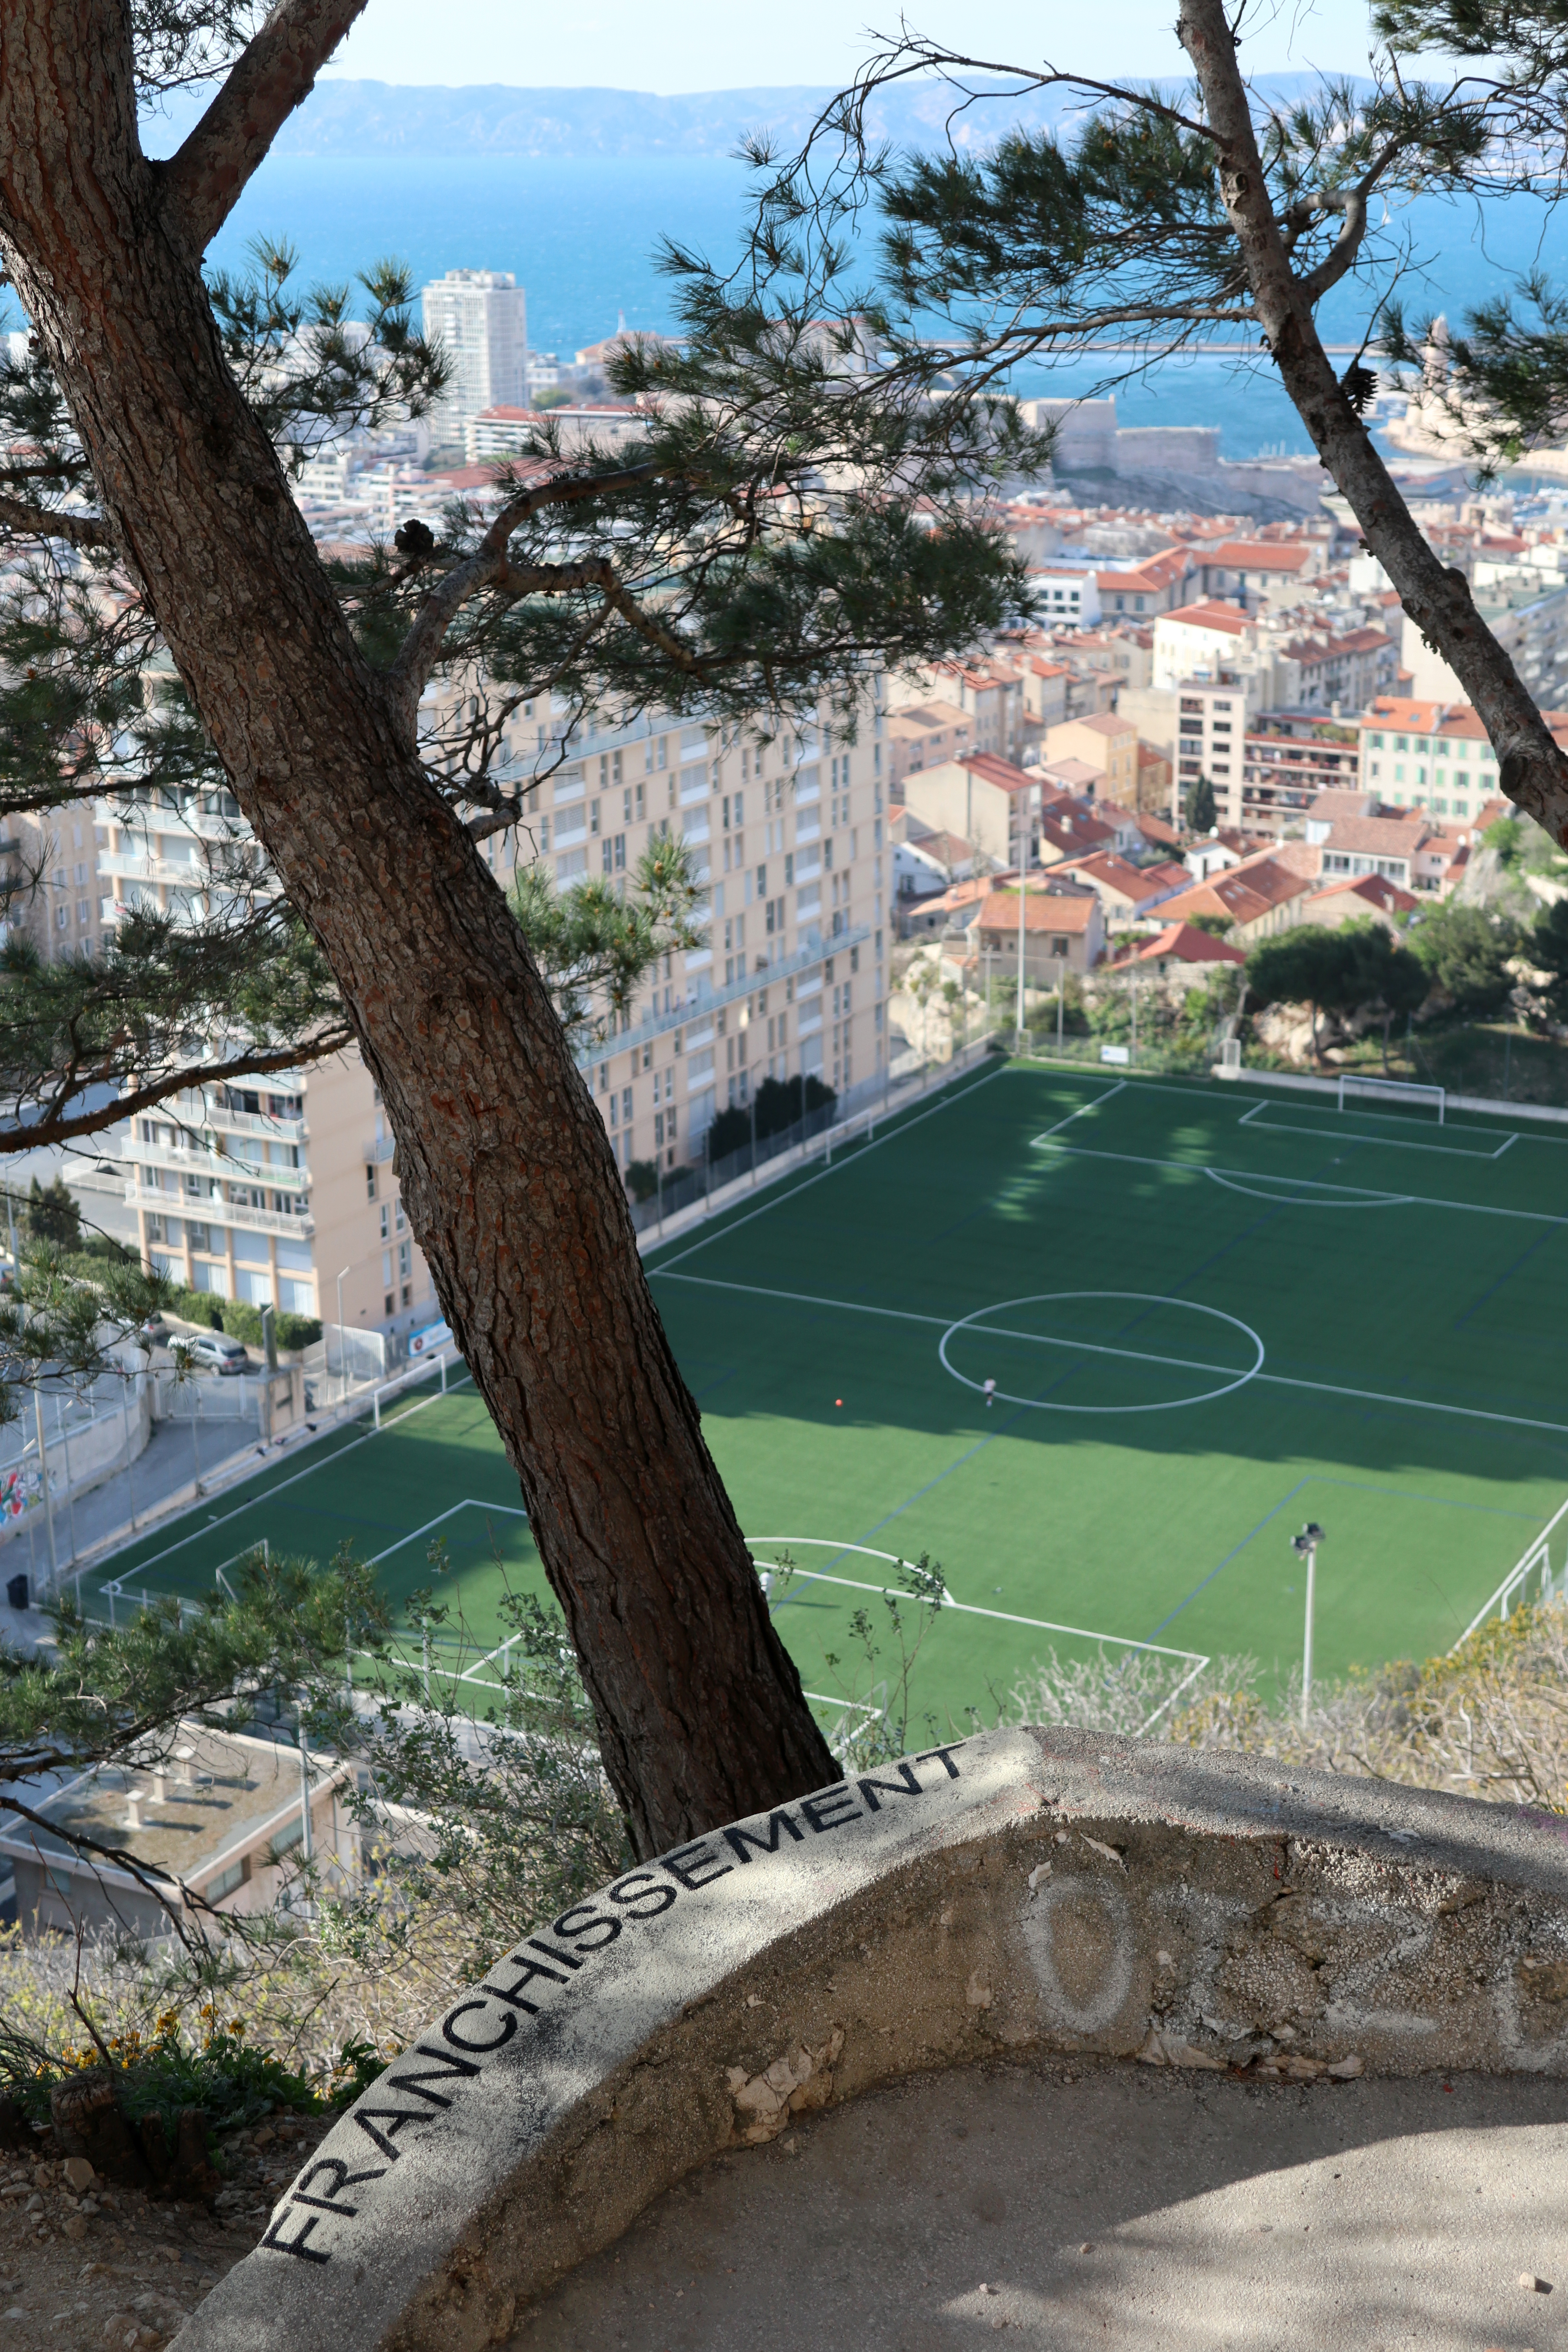 Laurent Lacotte - Franchissement, 2021
Peinture aérosol sur parapet en béton, Marseille
→ Tirage pigmentaire contrecollé sur aluminium
90 x 60 cm